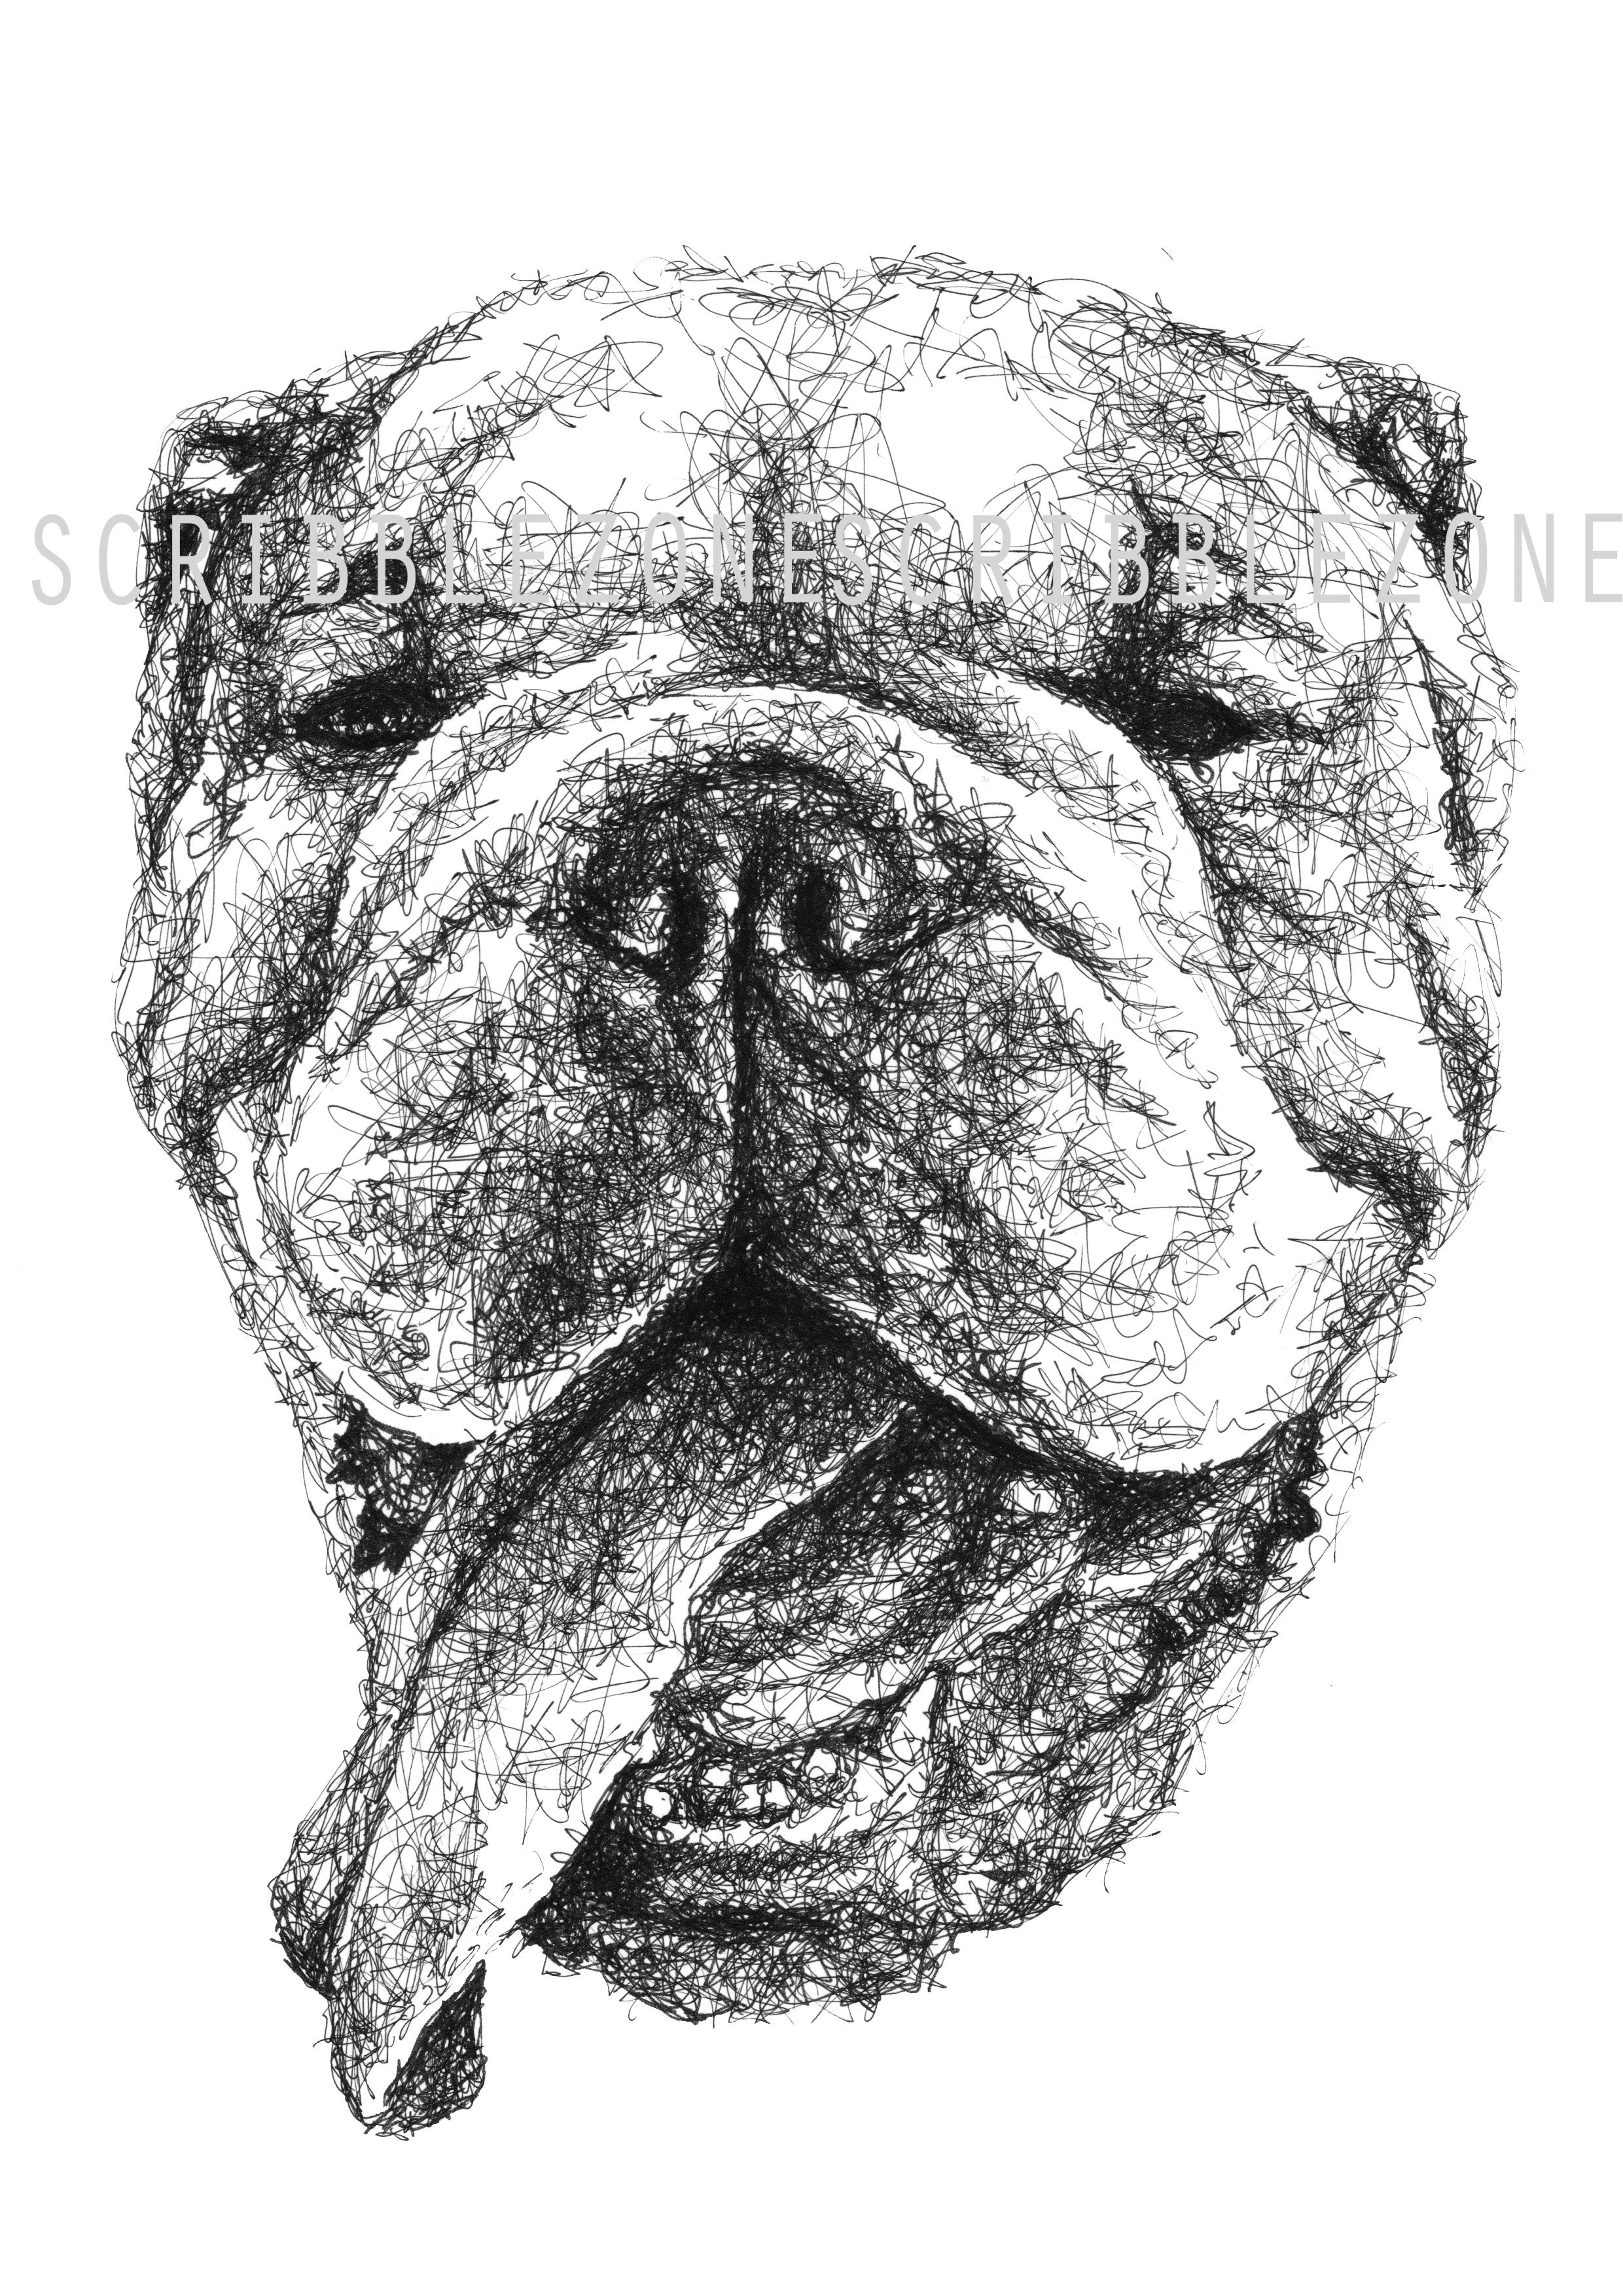 English Bulldog Zeichnung von der Künstlerin Marilena Hamm aka Scribblezone